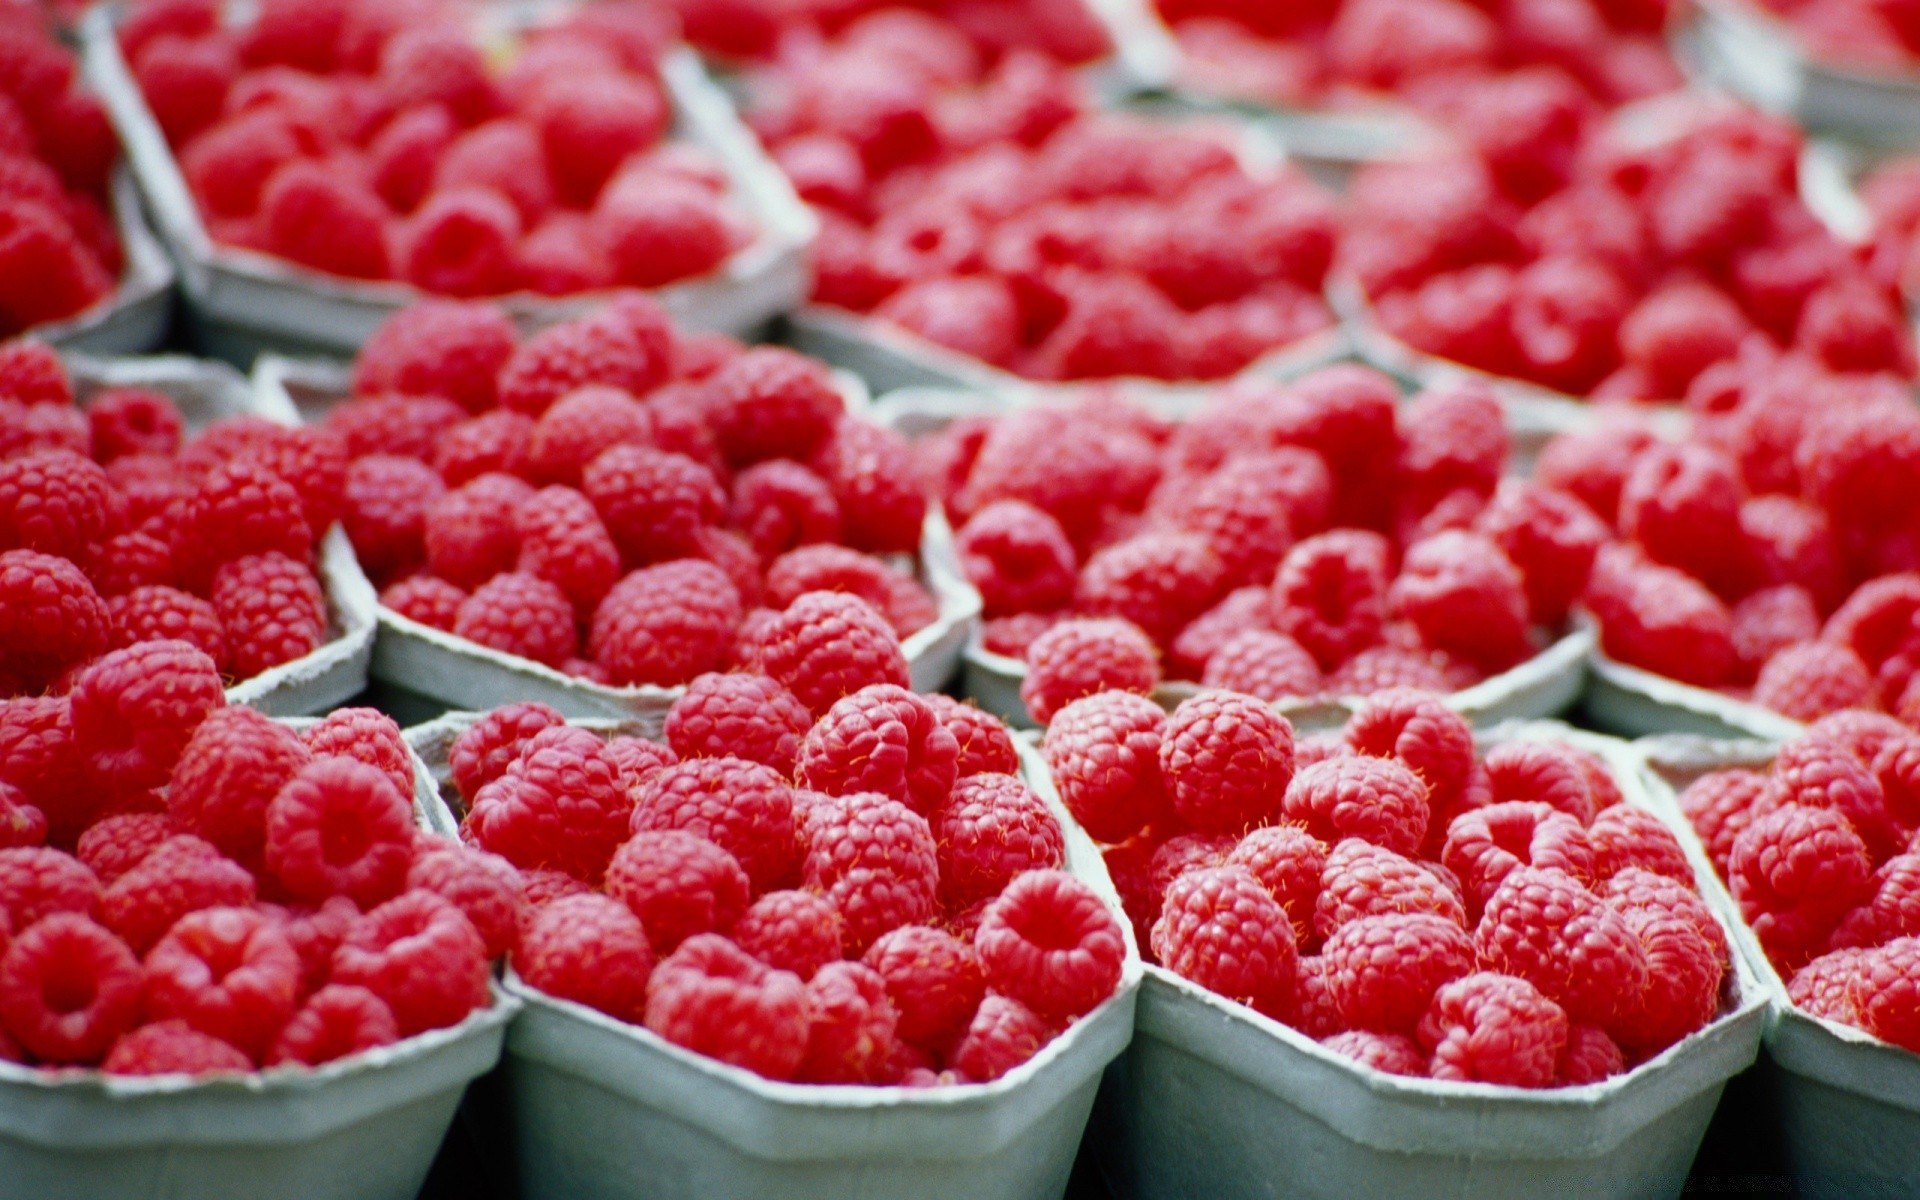 фрукты малина еда сладкий ягодка сочные вкусные здоровый рынок диета свежесть питание многие вкусные здоровья партия чаша пастбище